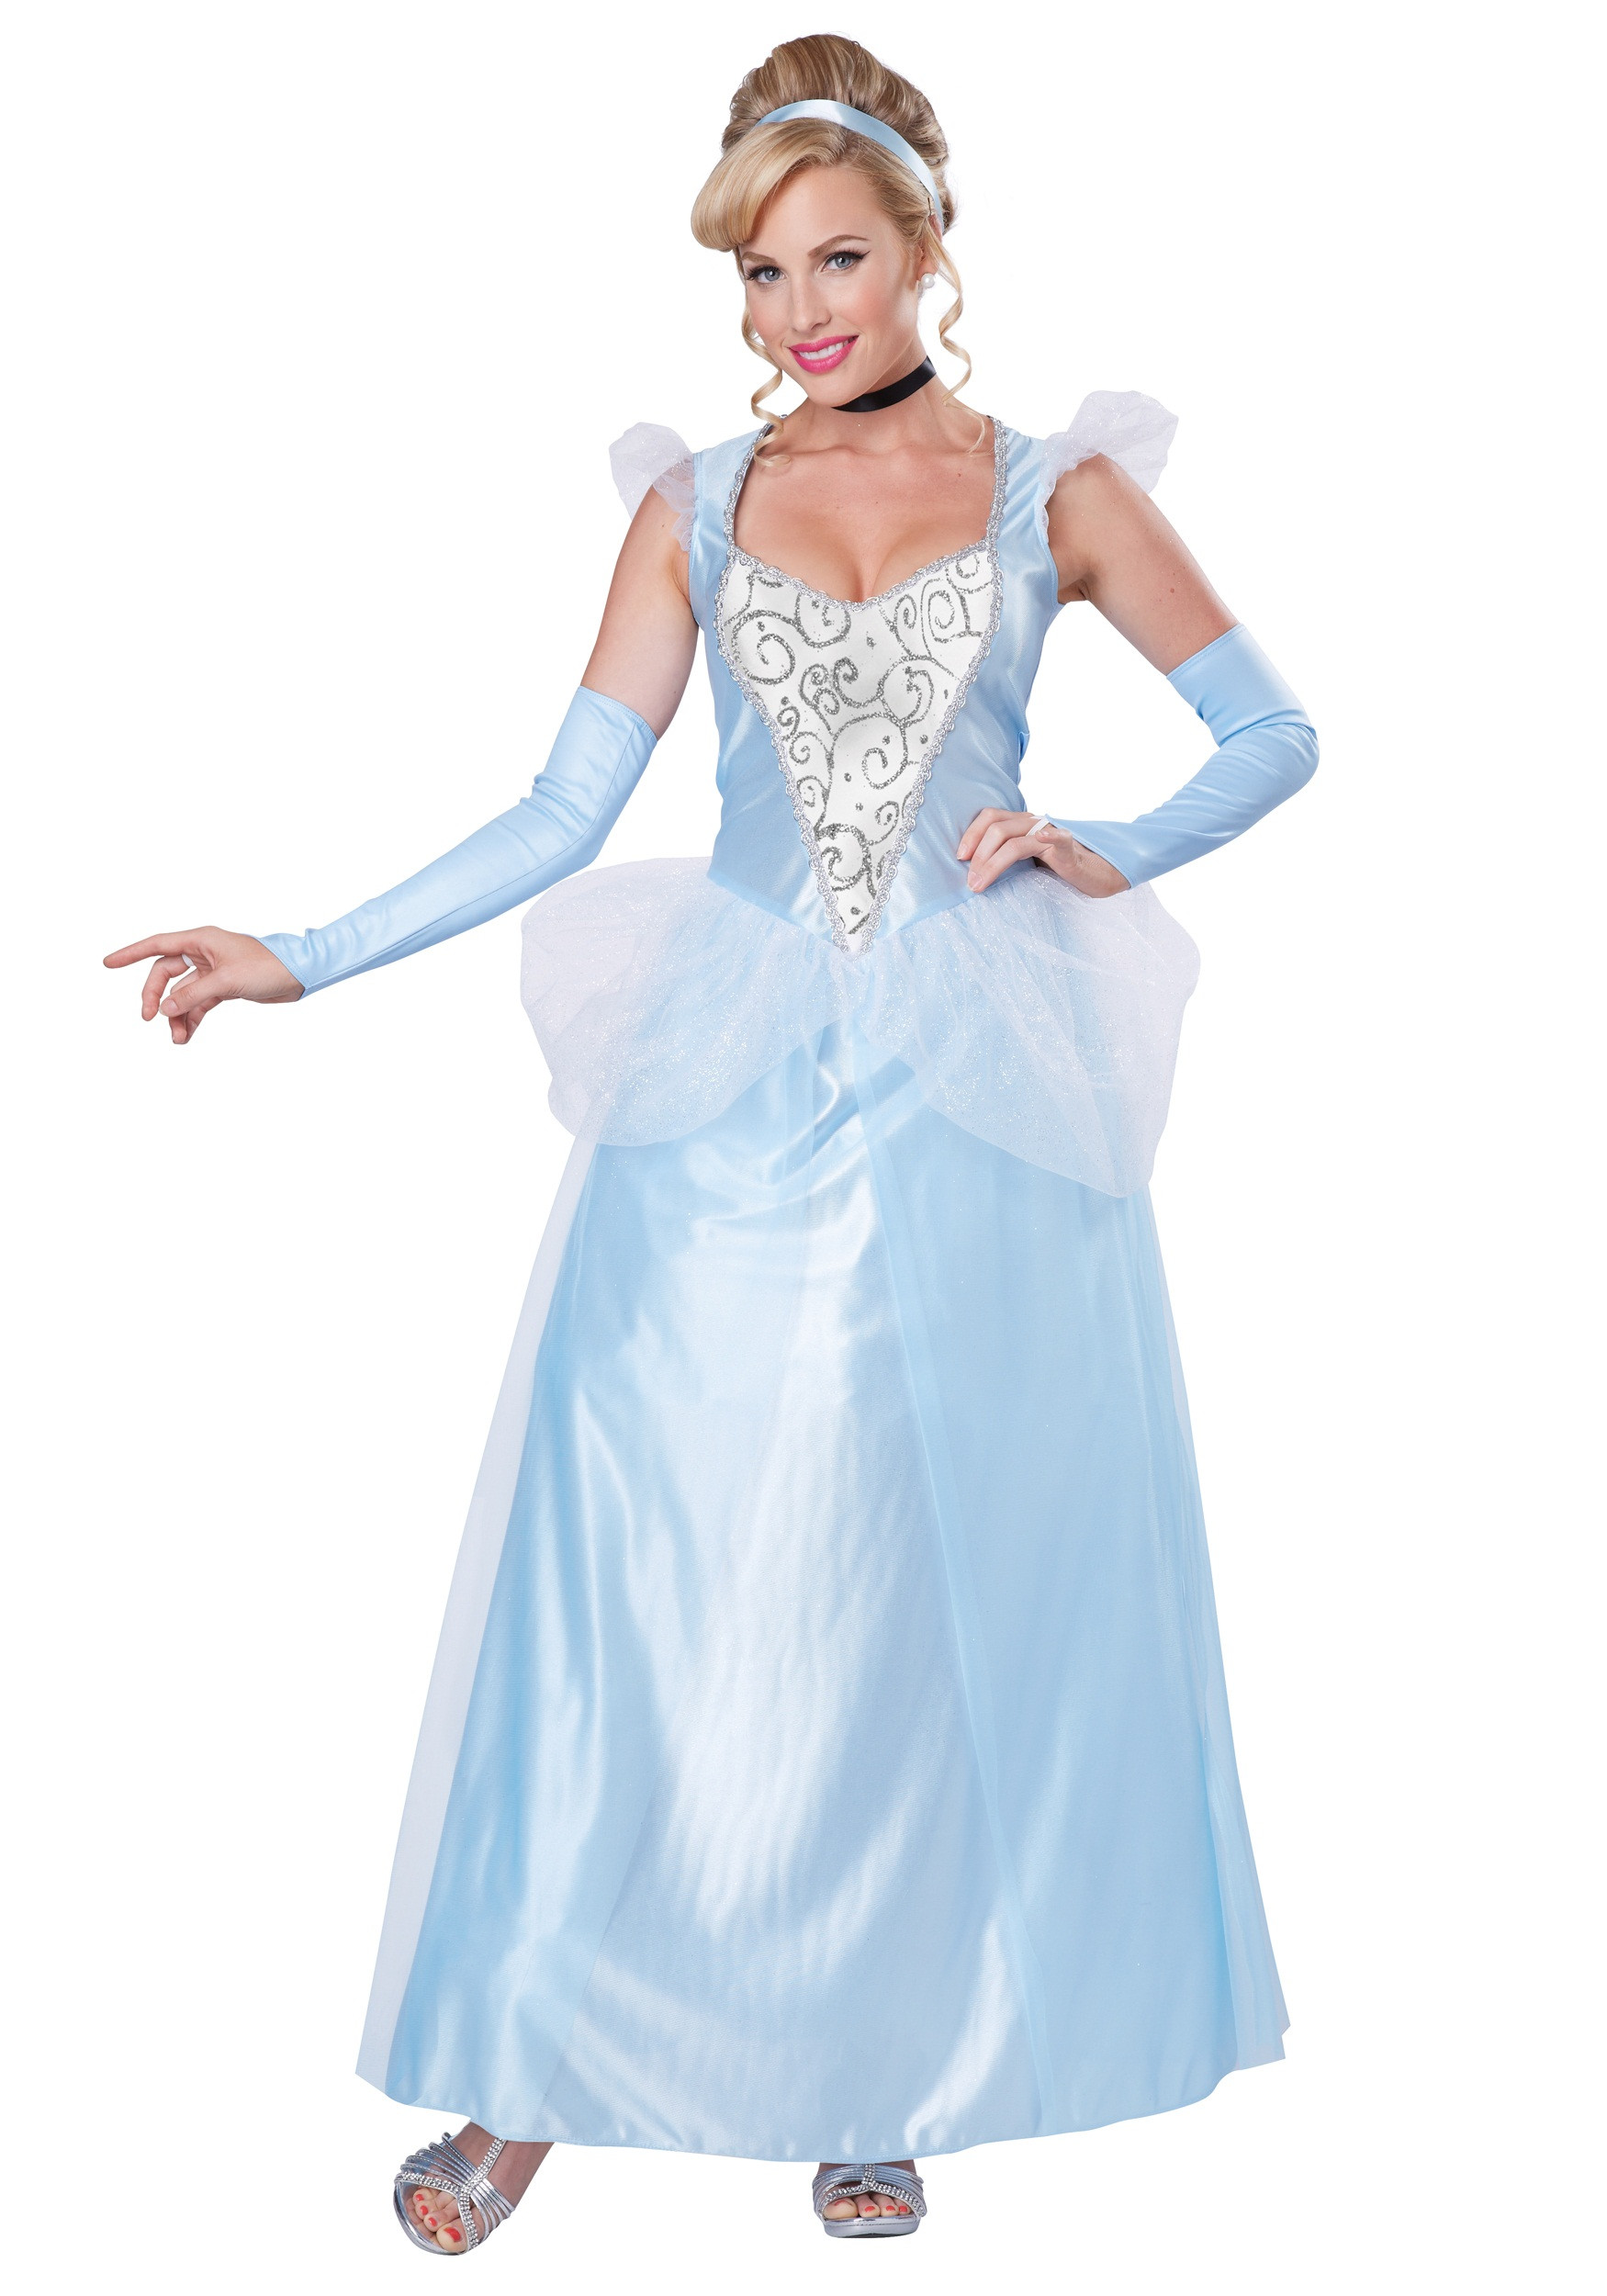 Cinderella DIY Costumes
 Women s Classic Cinderella Costume